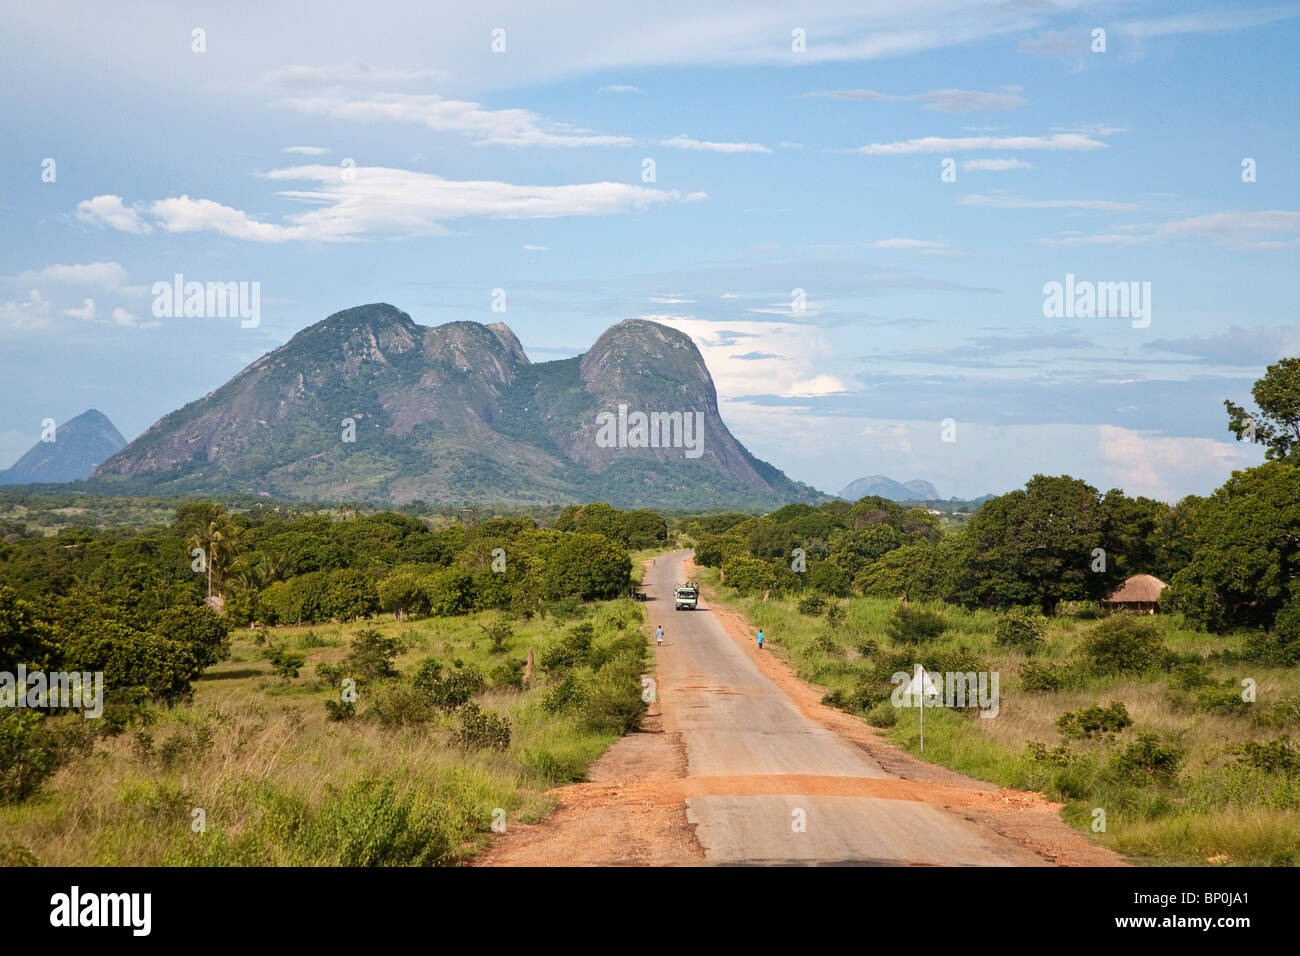 Mozambique, near Nampula. The long, pot-holed road towards Nampula. Stock Photo